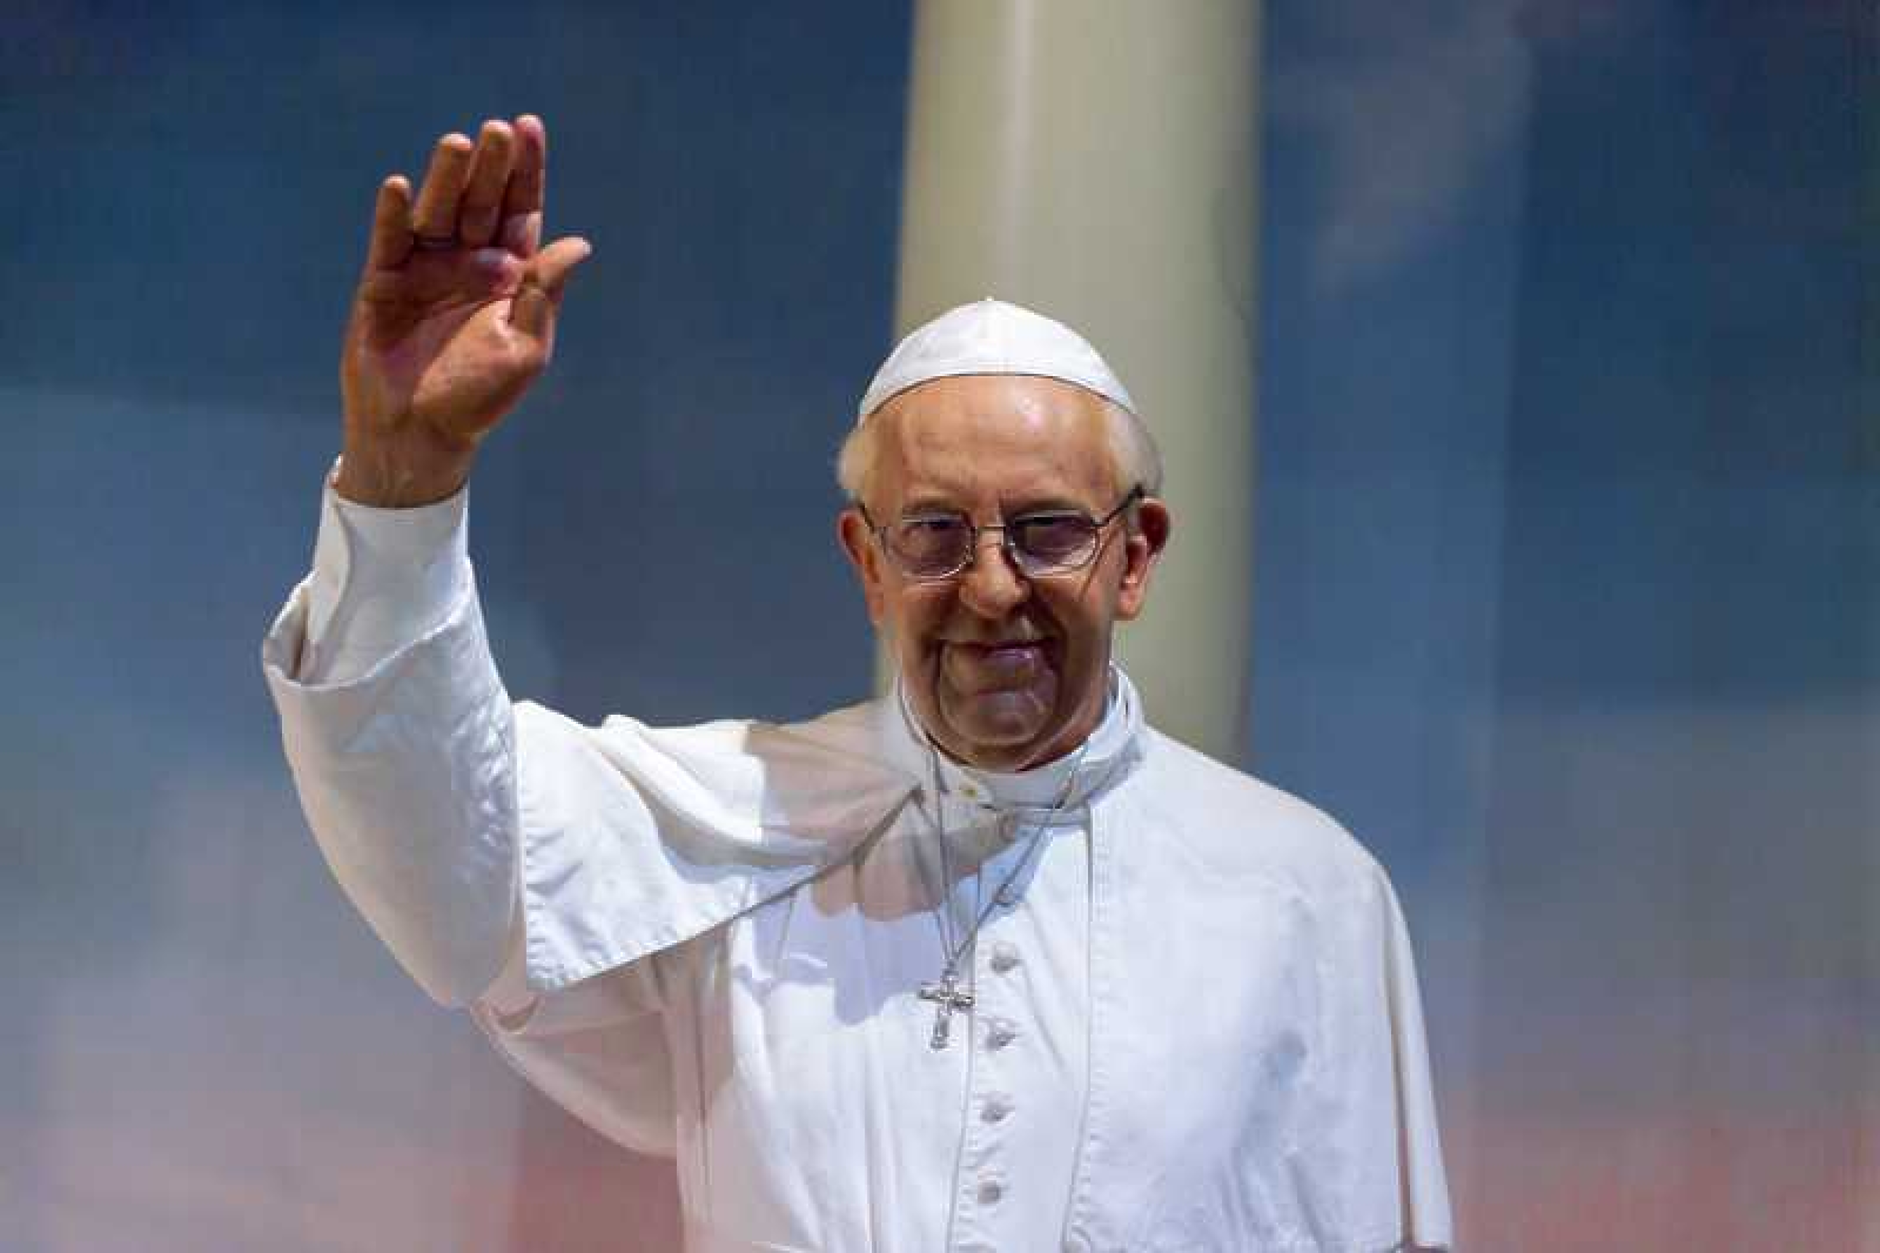 Католиците празнуват Великден, папата ще отправи традиционното си послание 